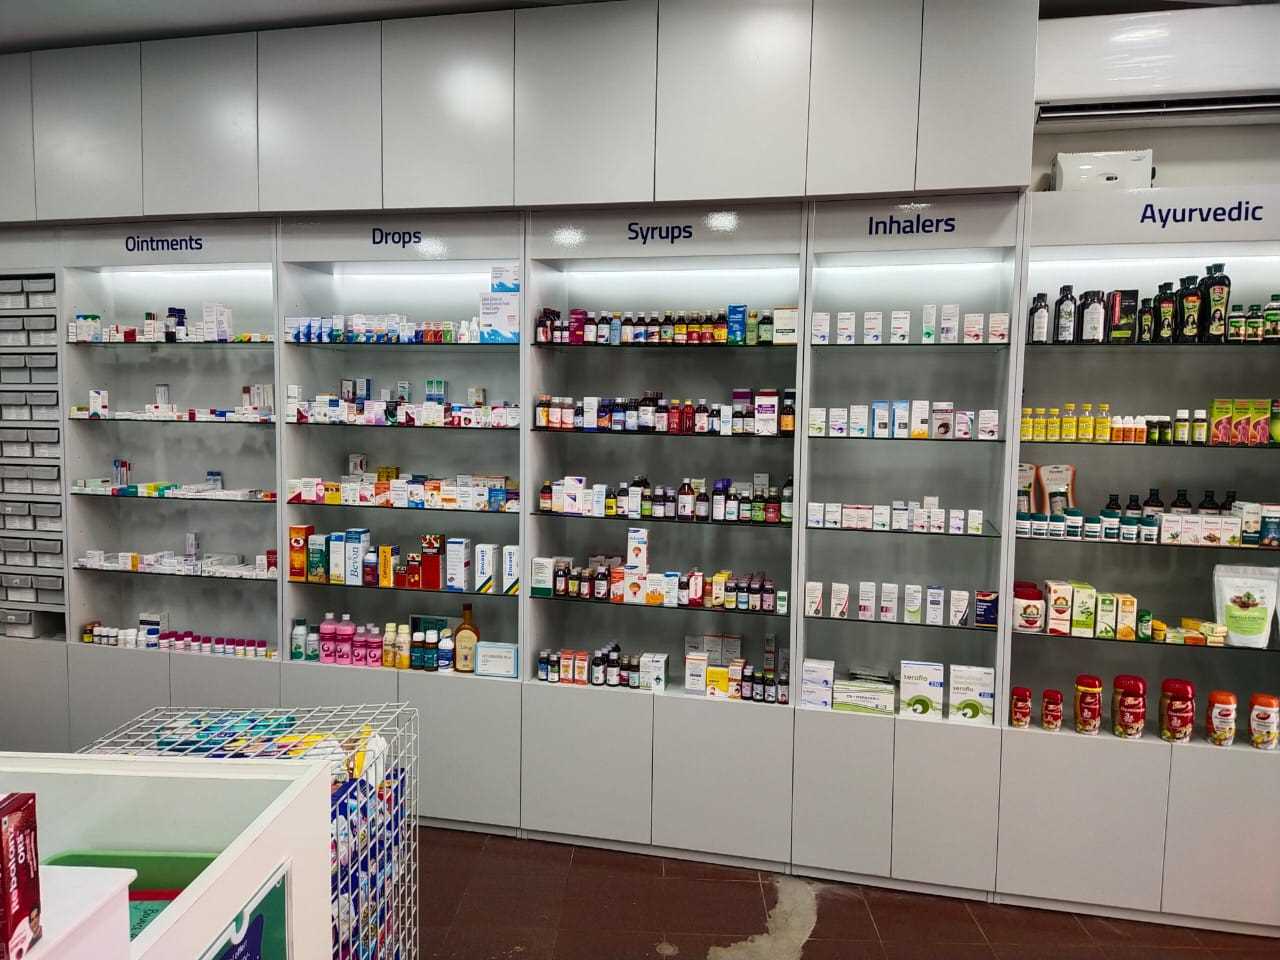 Aster Pharmacy in Ollur Center, Thrissur